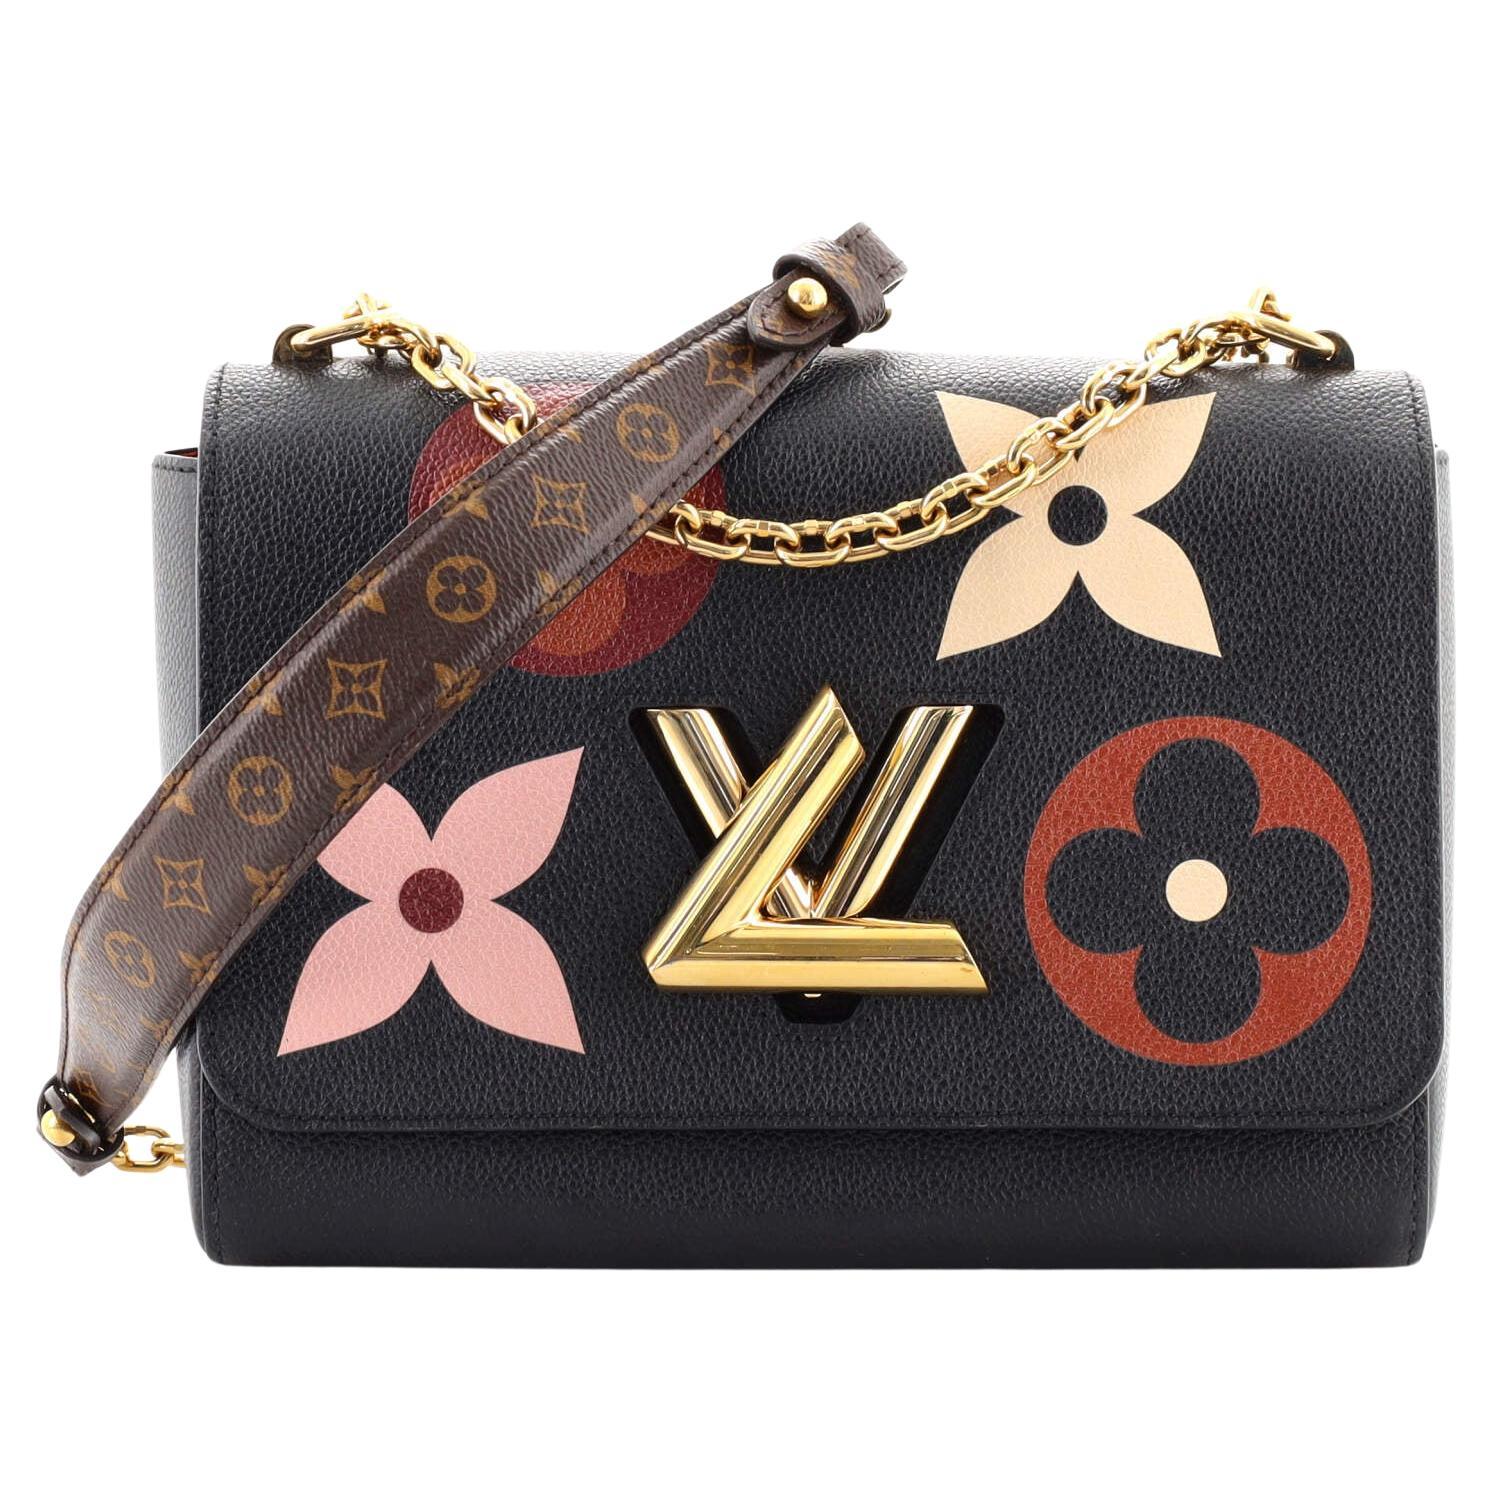 Sold at Auction: Louis Vuitton, LOUIS VUITTON shoulder bag TWIST MM.